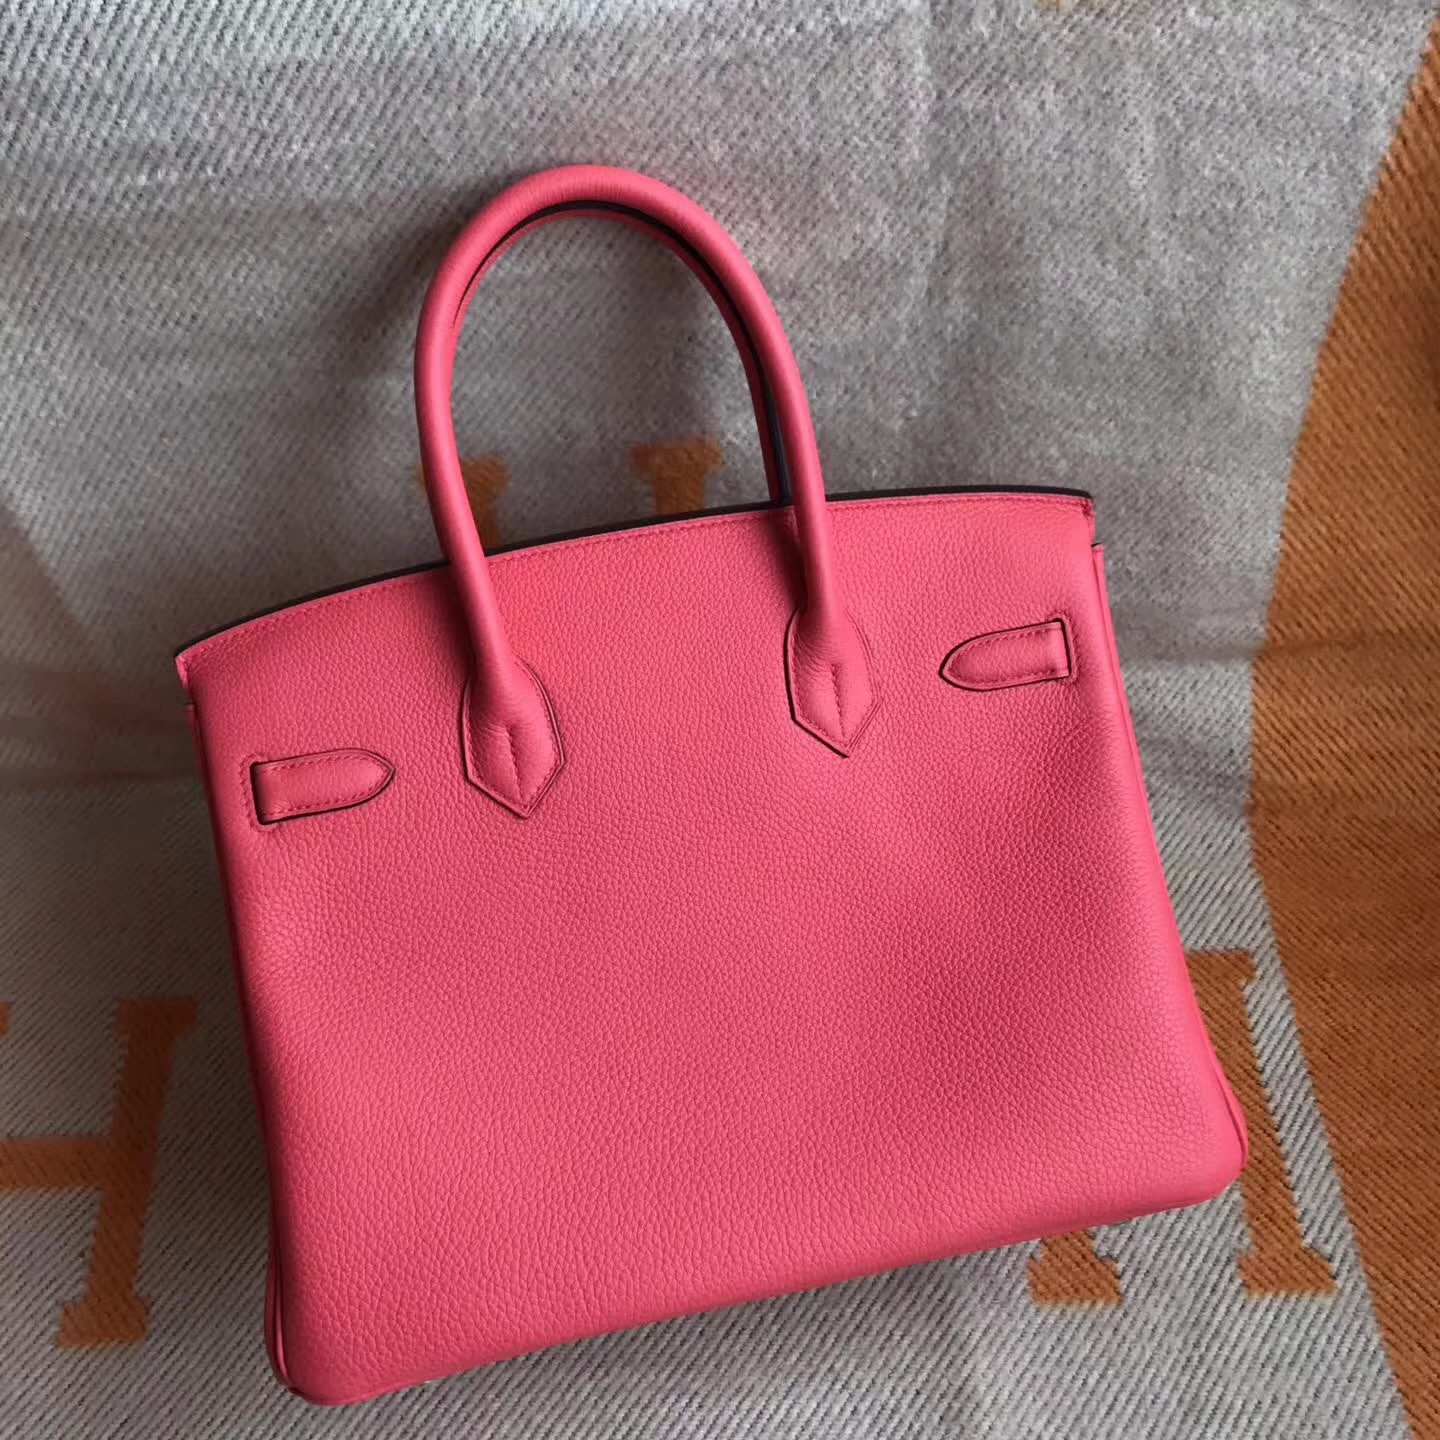 Fashion Hermes T5 Peach Pink Togo Calfskin Birkin Bag30cm Silver Hardware